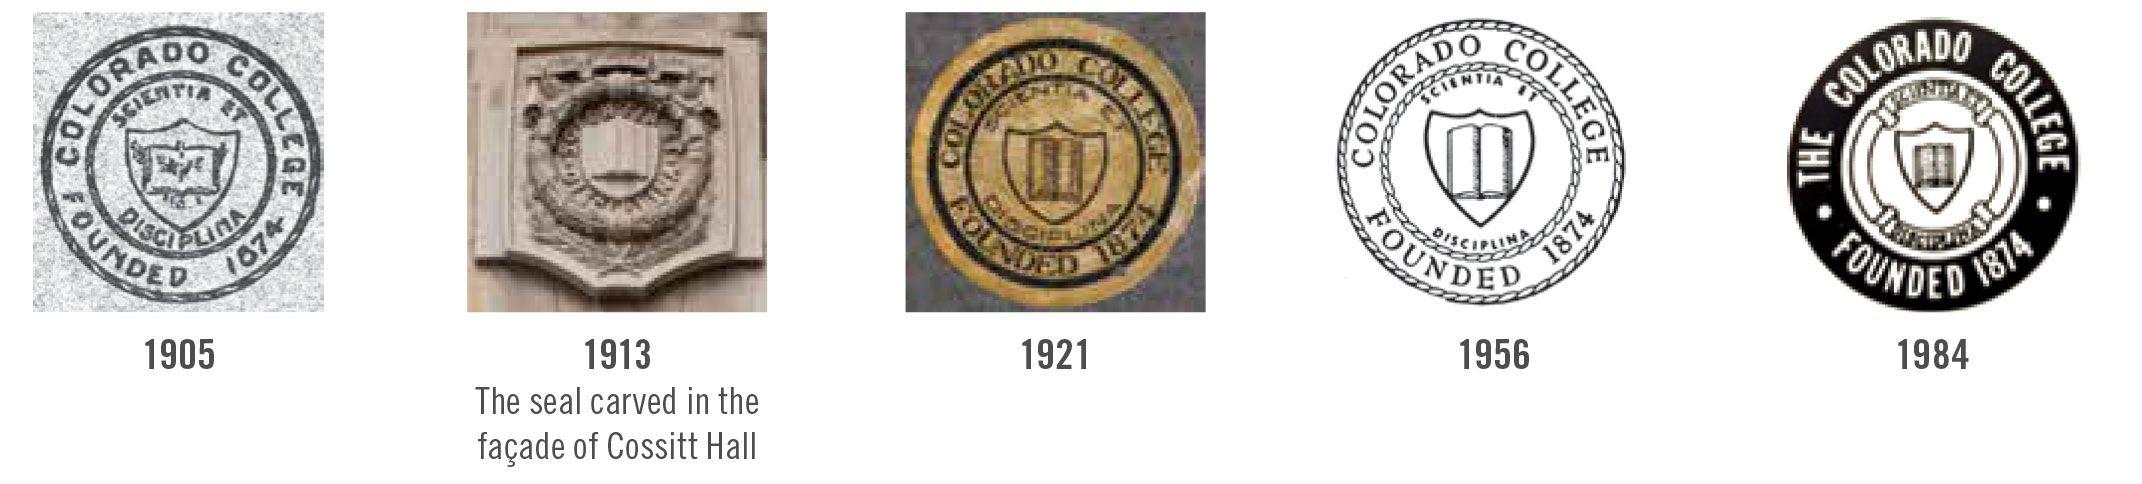 Colorado College Logo - A Brief History of Colorado College Logos | Bulletin